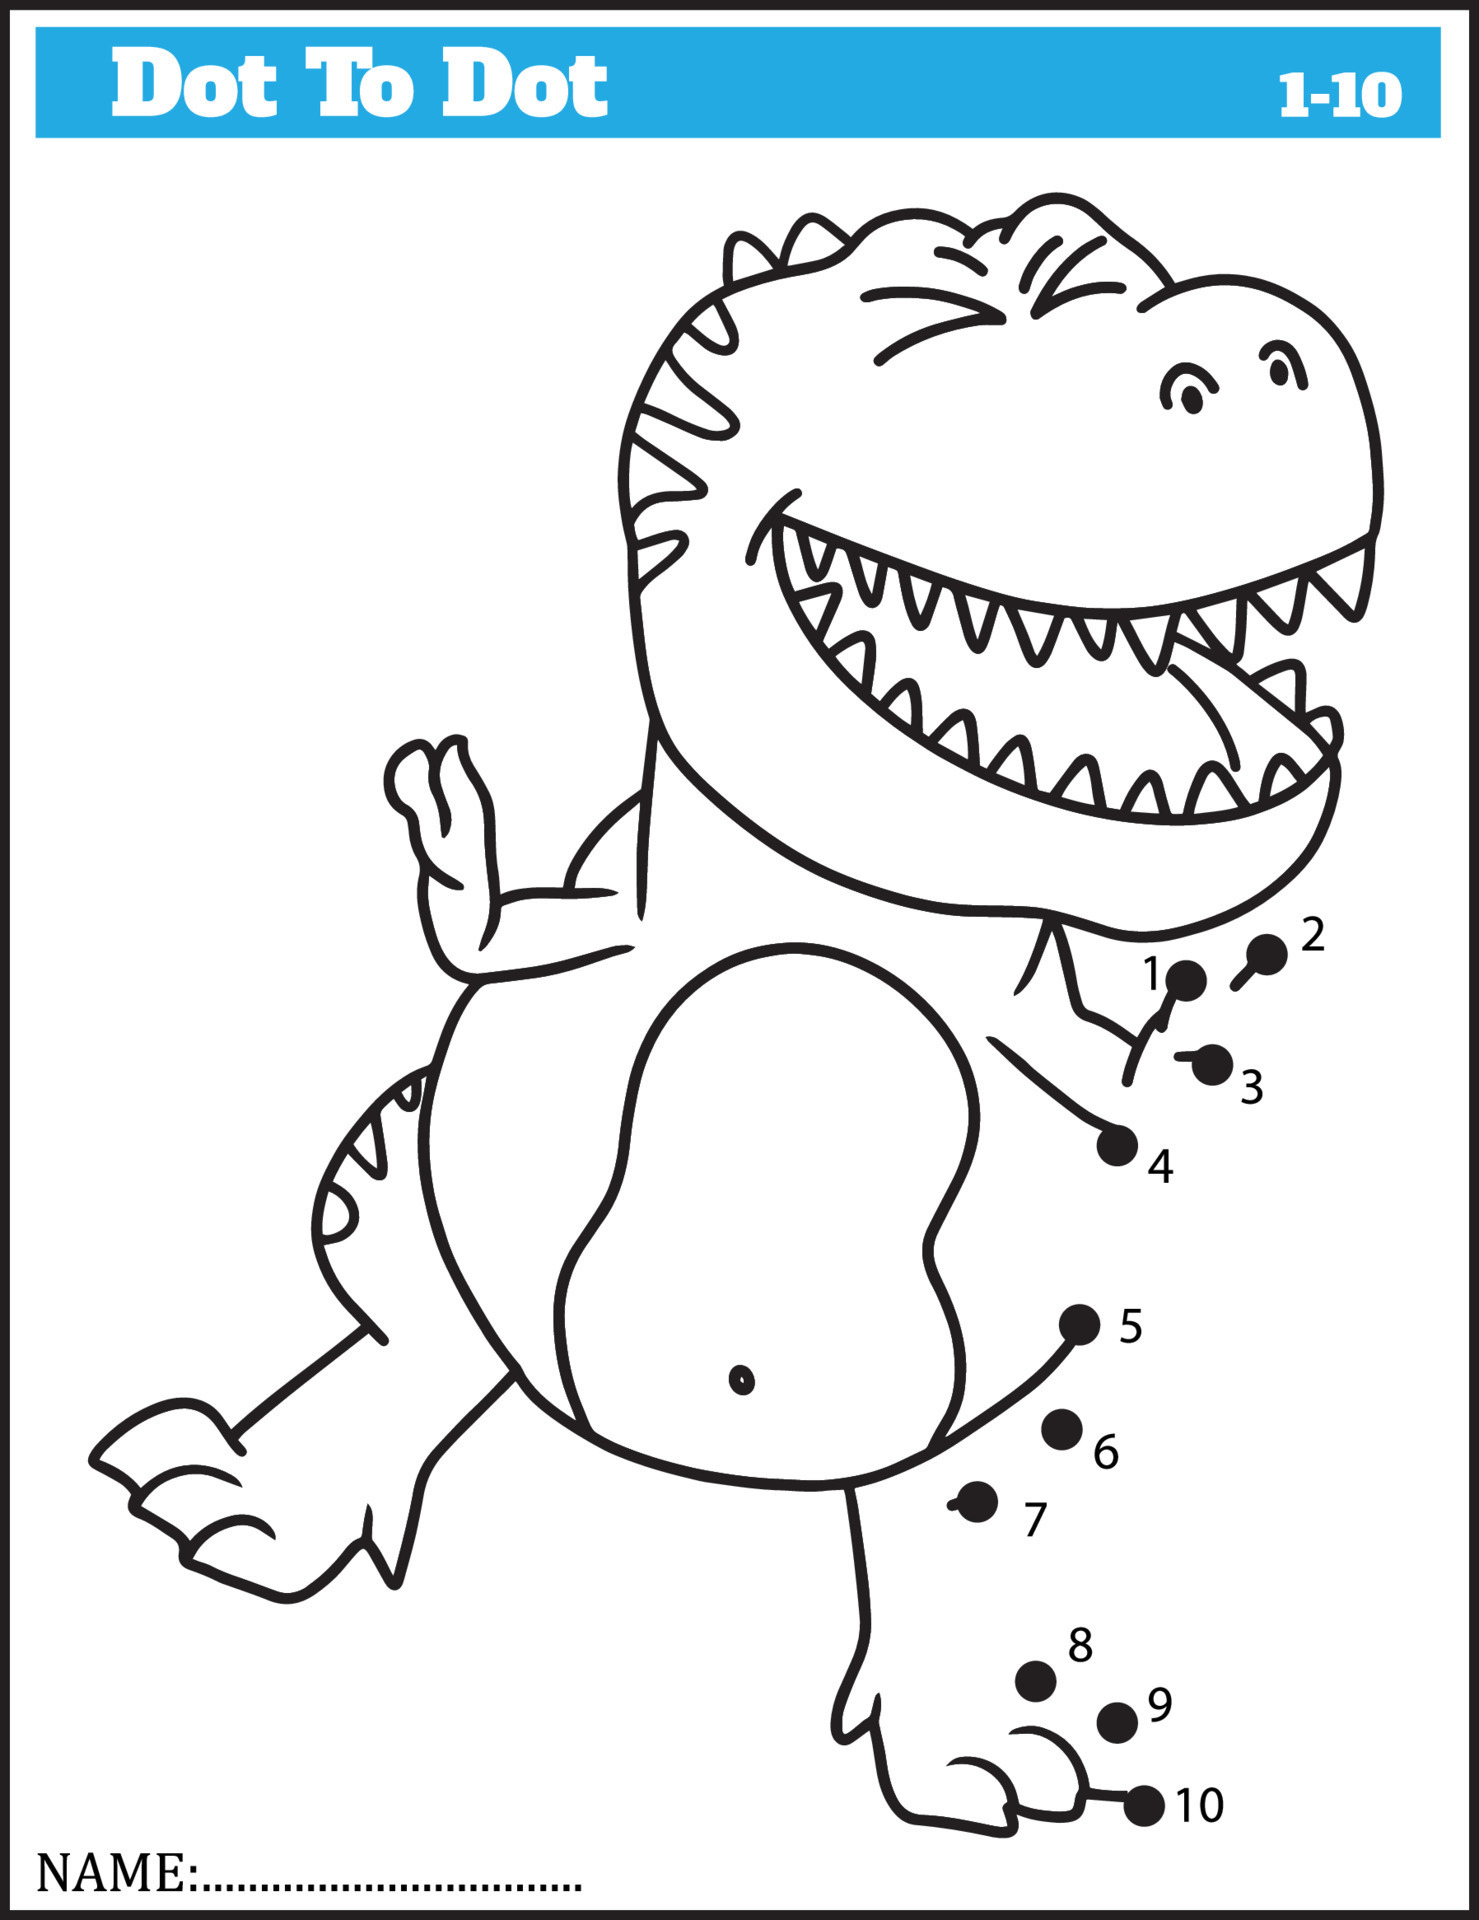 dinossauro engraçado dos desenhos animados. jogo ponto a ponto para  crianças, planilha de números. 10506586 Vetor no Vecteezy